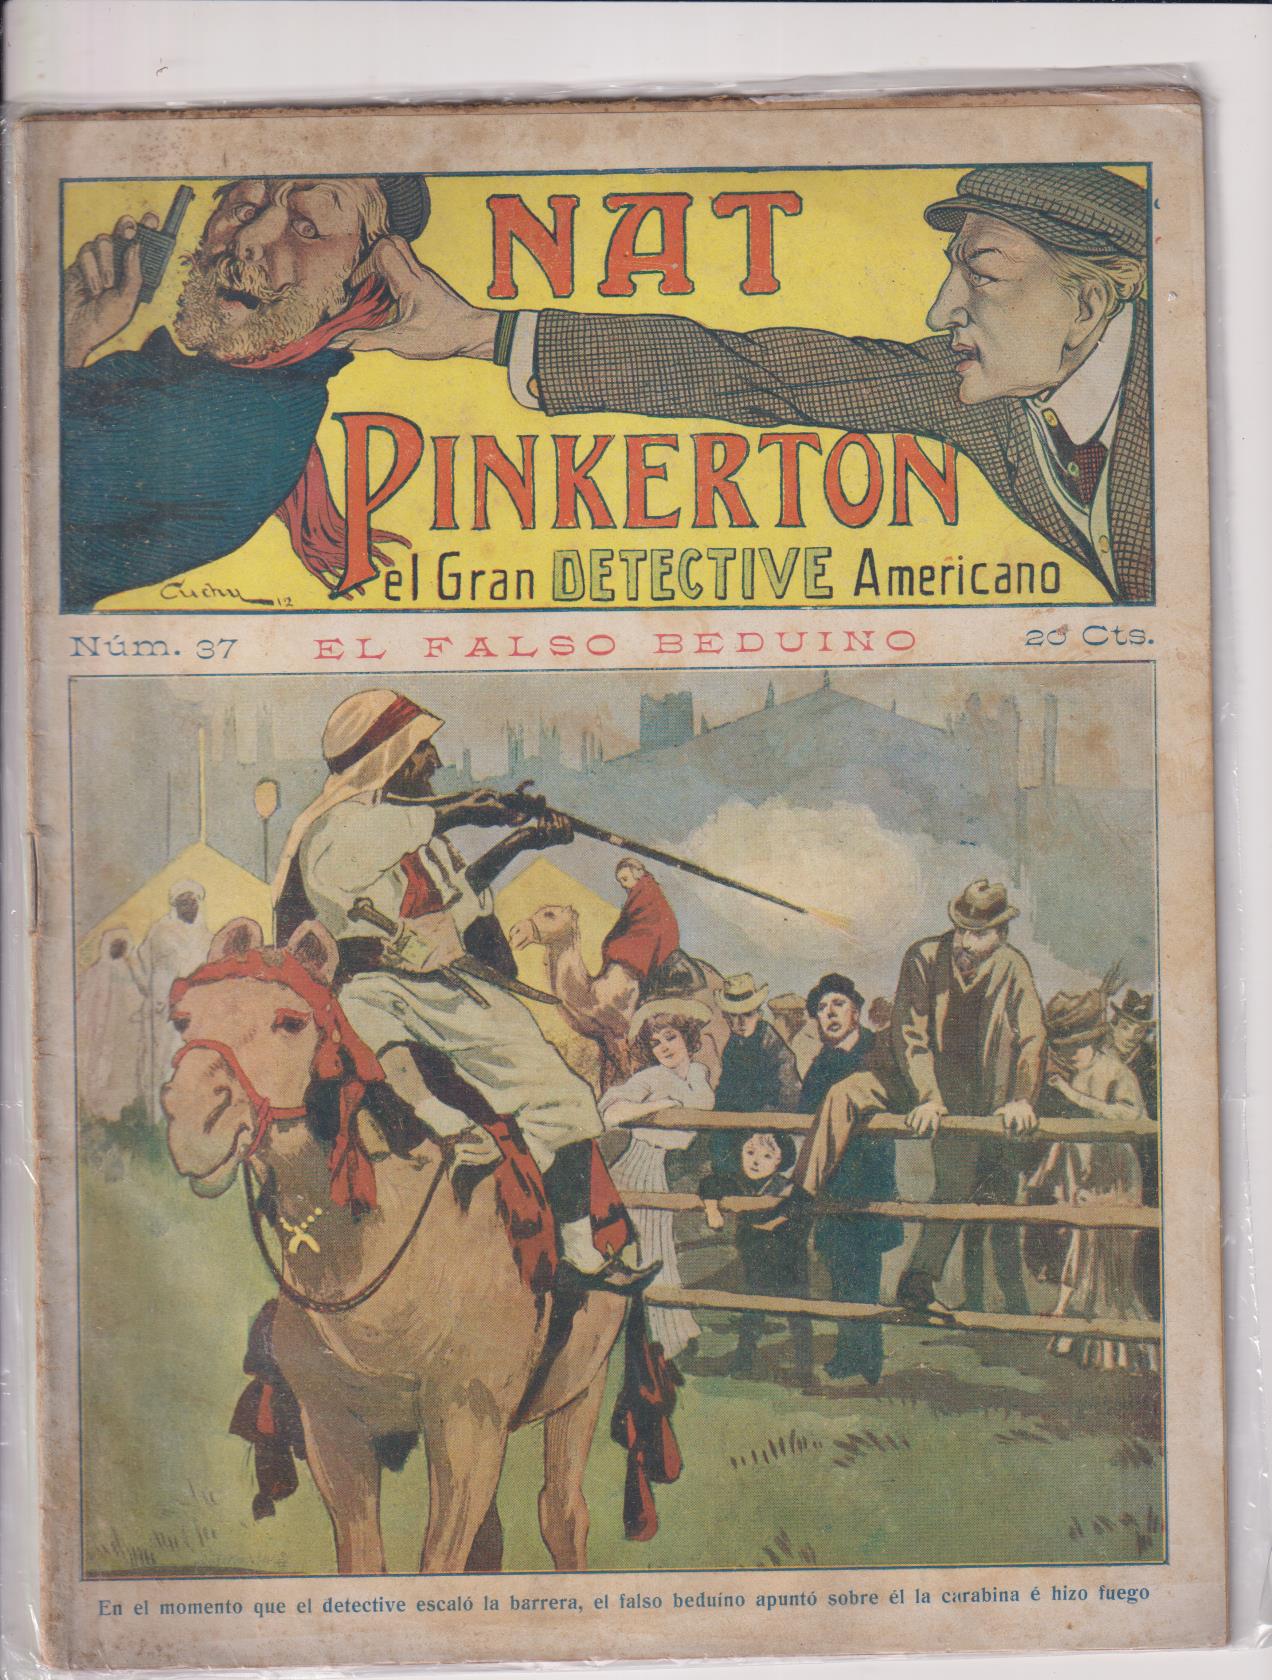 Nat Pinkerton. El Gran detective Americano nº 37. Seguí. (26x21) 31 p.p. con imágenes